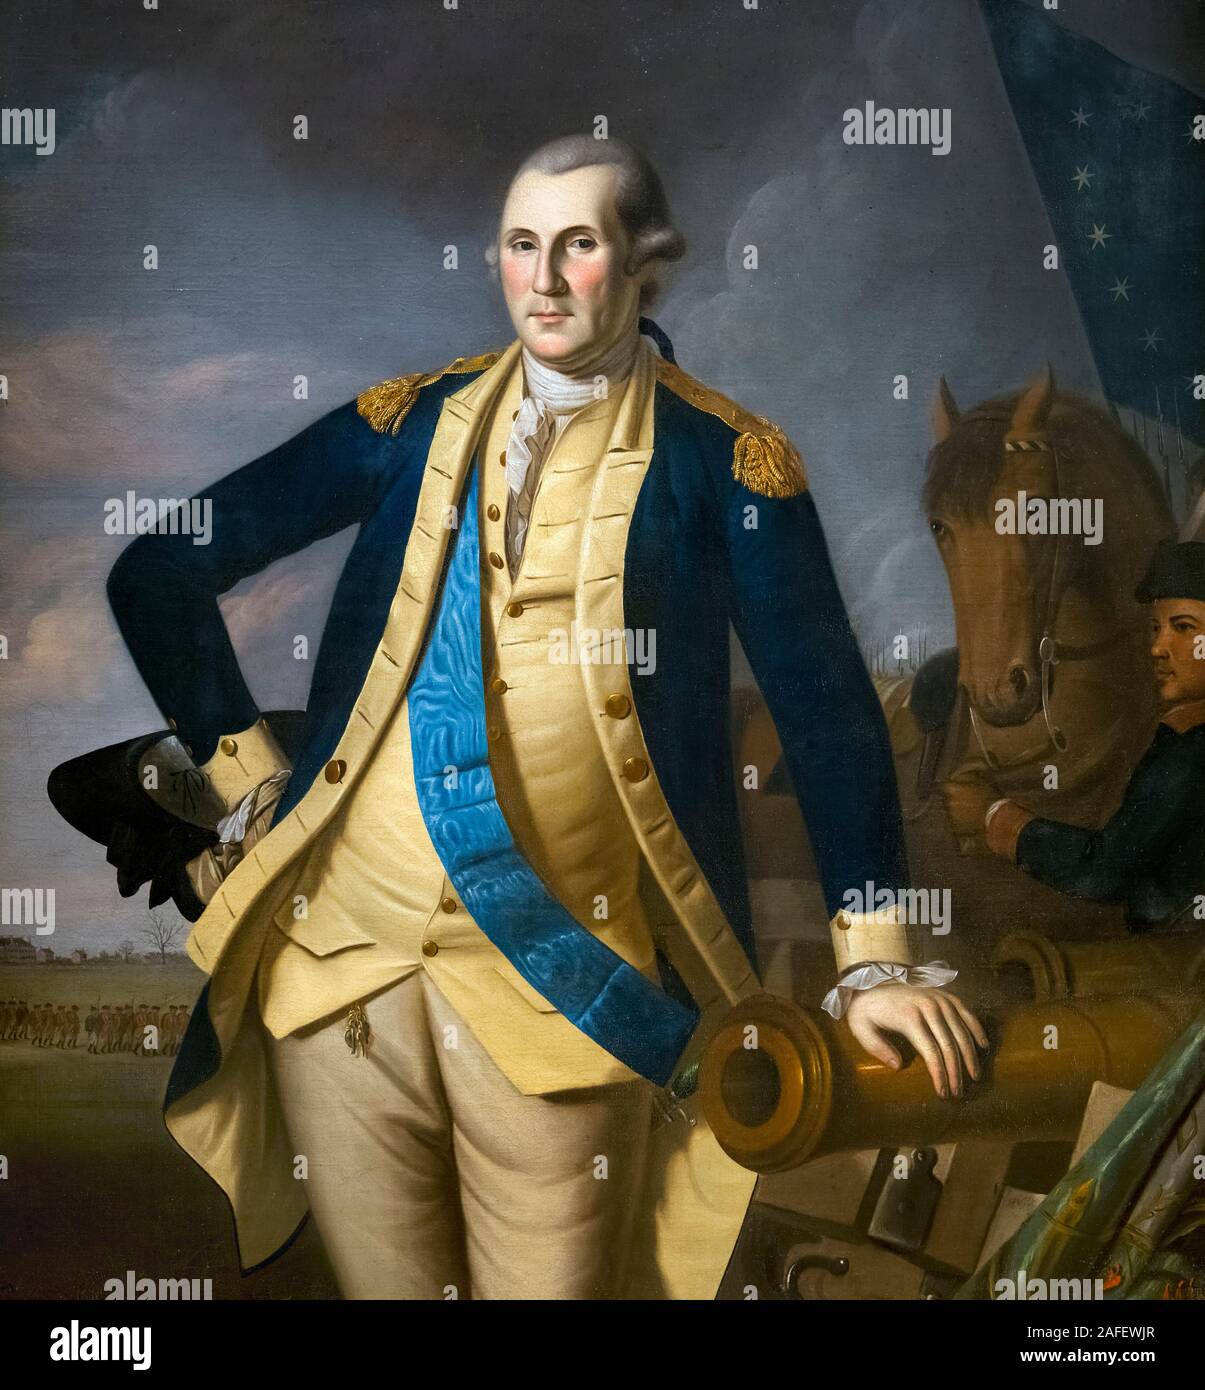 George Washington nella battaglia di Princeton da Charles Willson Peale, olio su tela, c.1779 Foto Stock